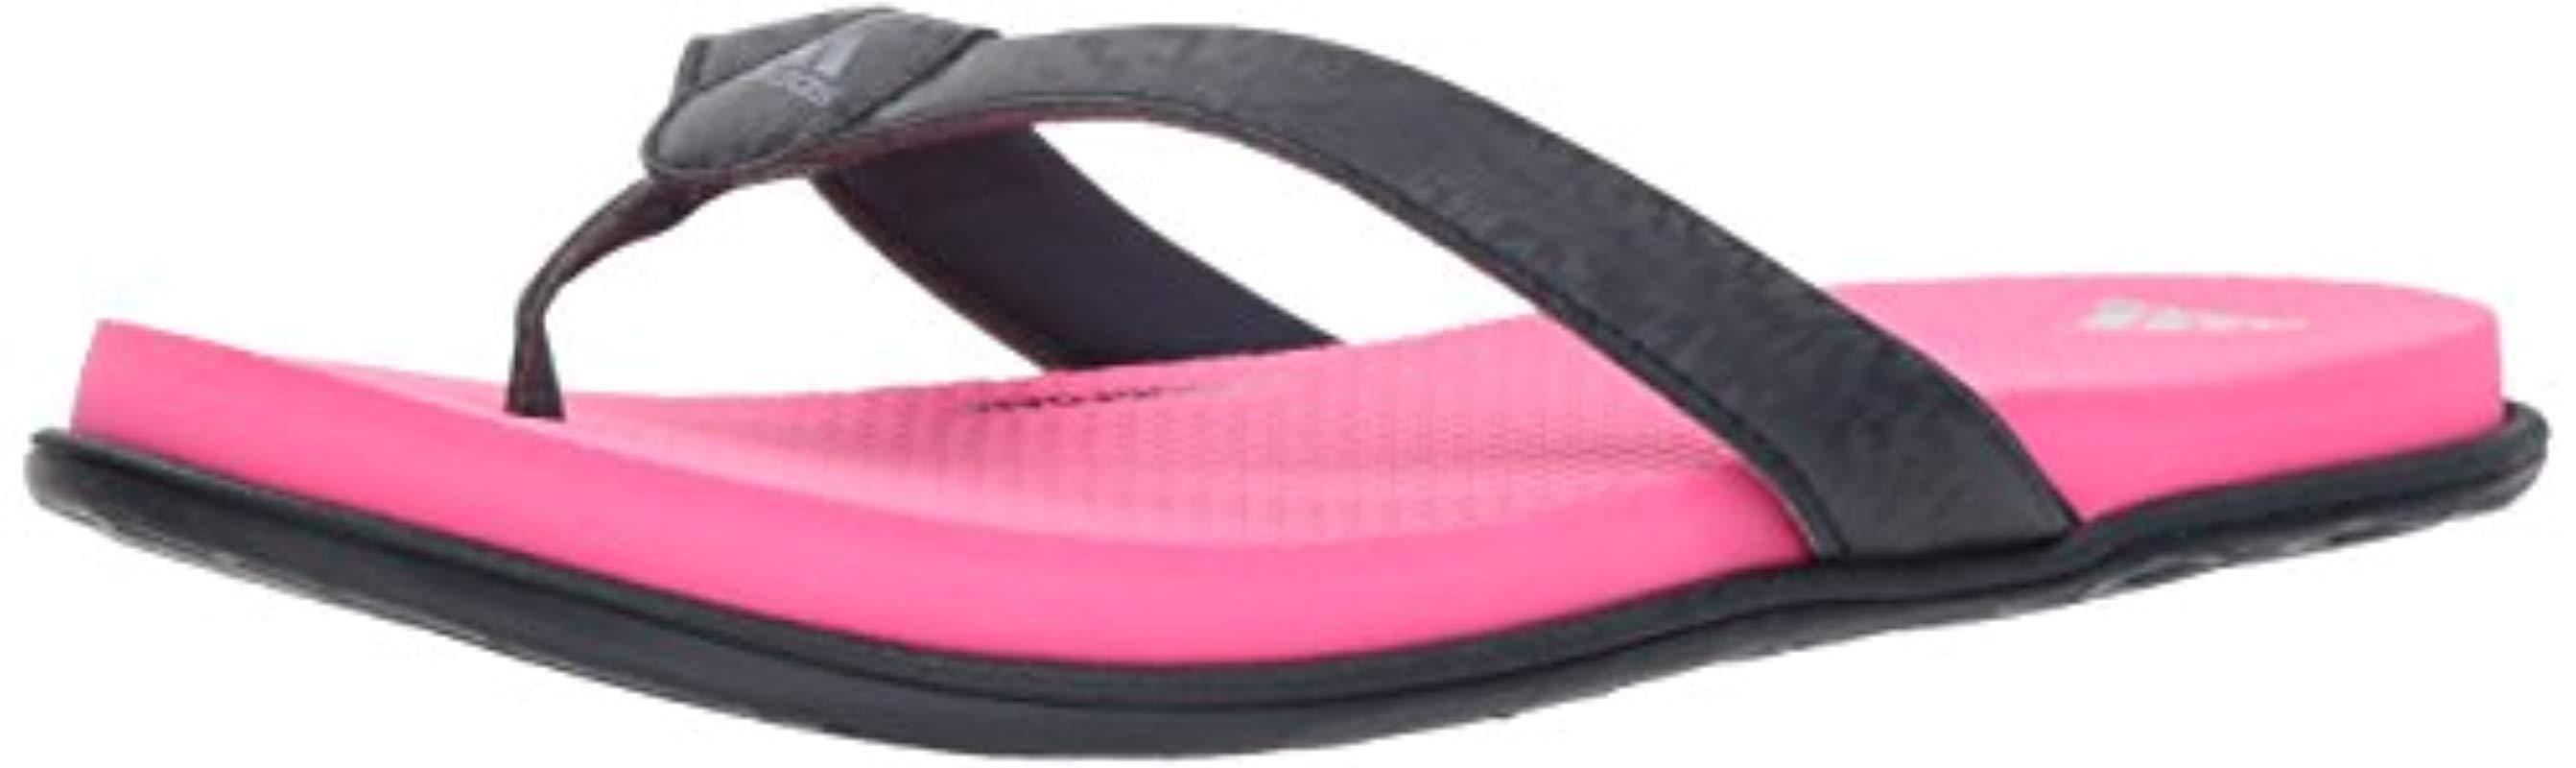 adidas Originals Cloudfoam Flip Flop Slide Sandal in Pink |